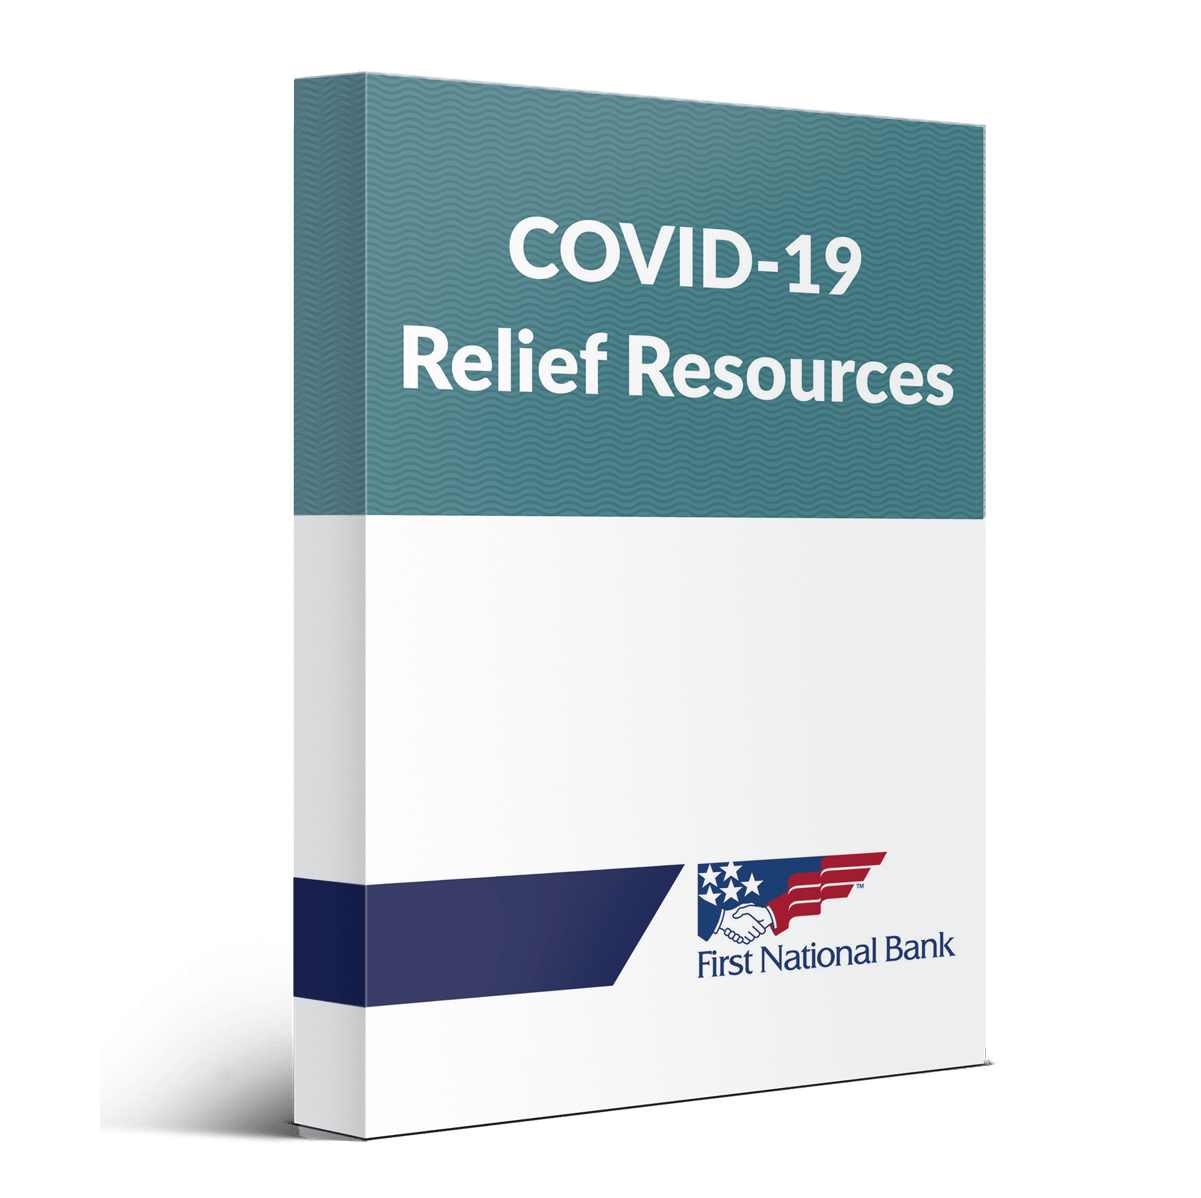 COVID Relief Resources box